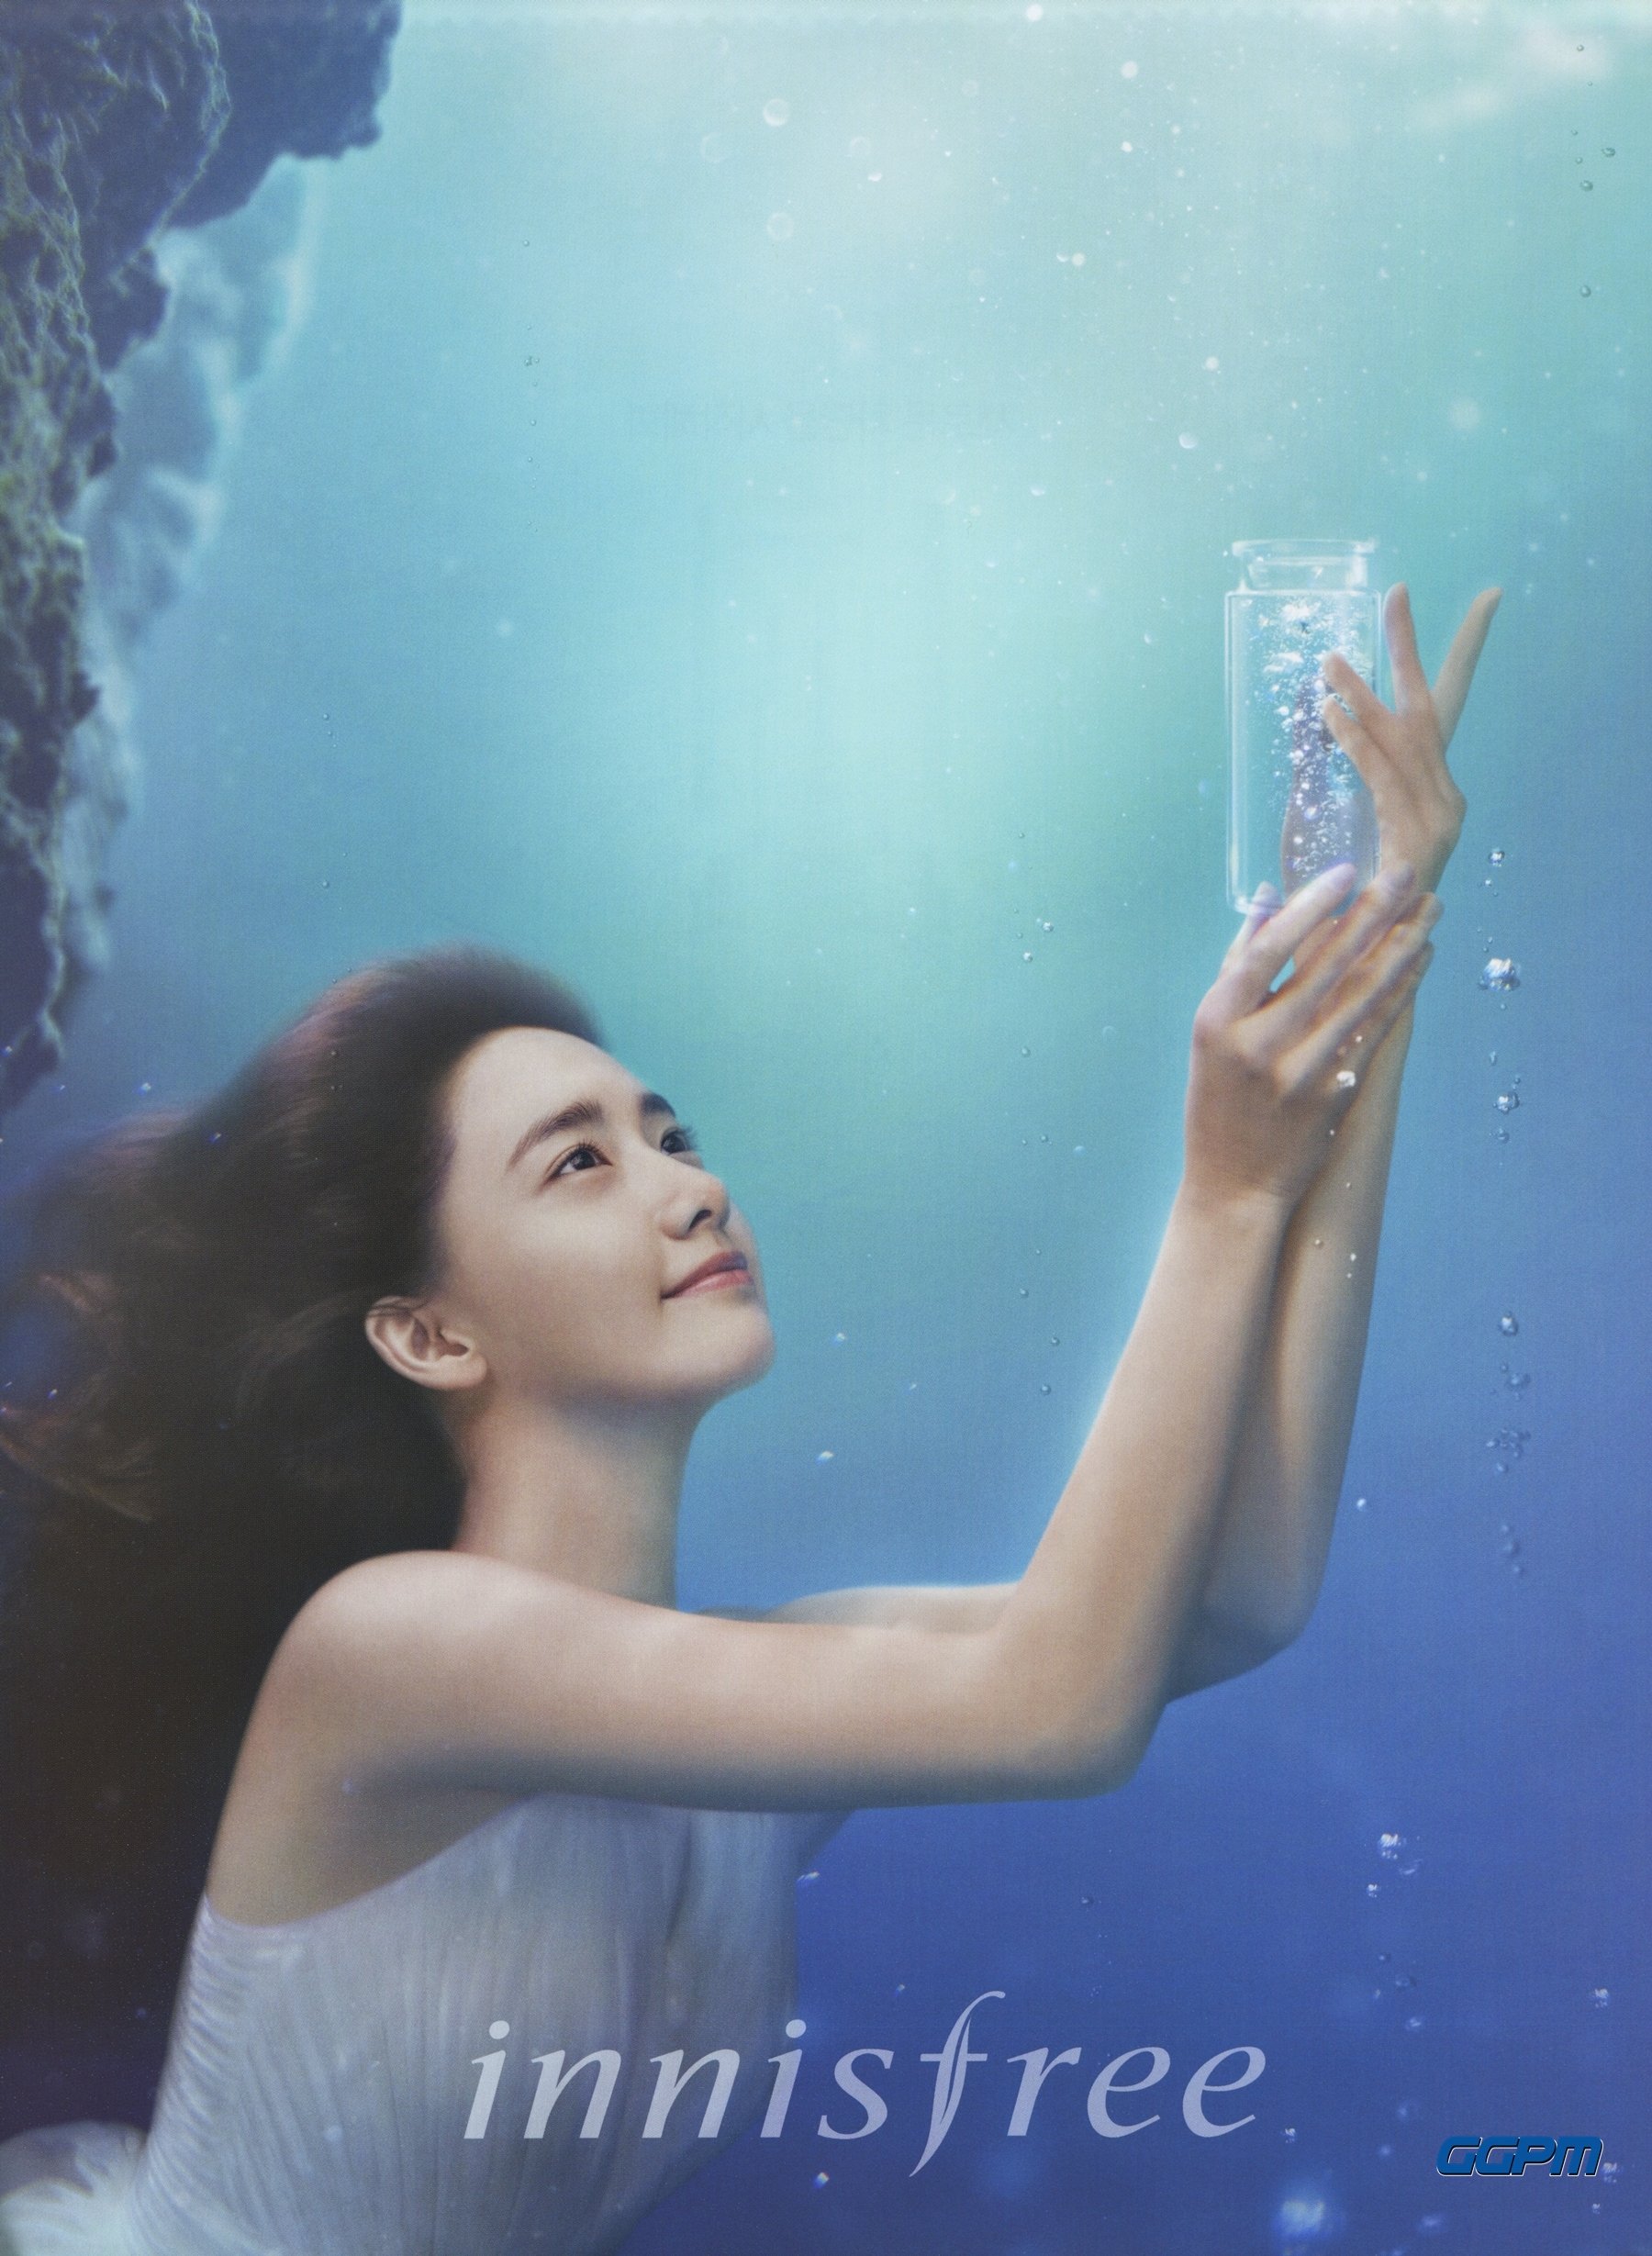 [OTHER][21-07-2012]Hình ảnh mới nhất từ thương hiệu "Innisfree" của YoonA - Page 15 HZeaPEyxAS-3000x3000